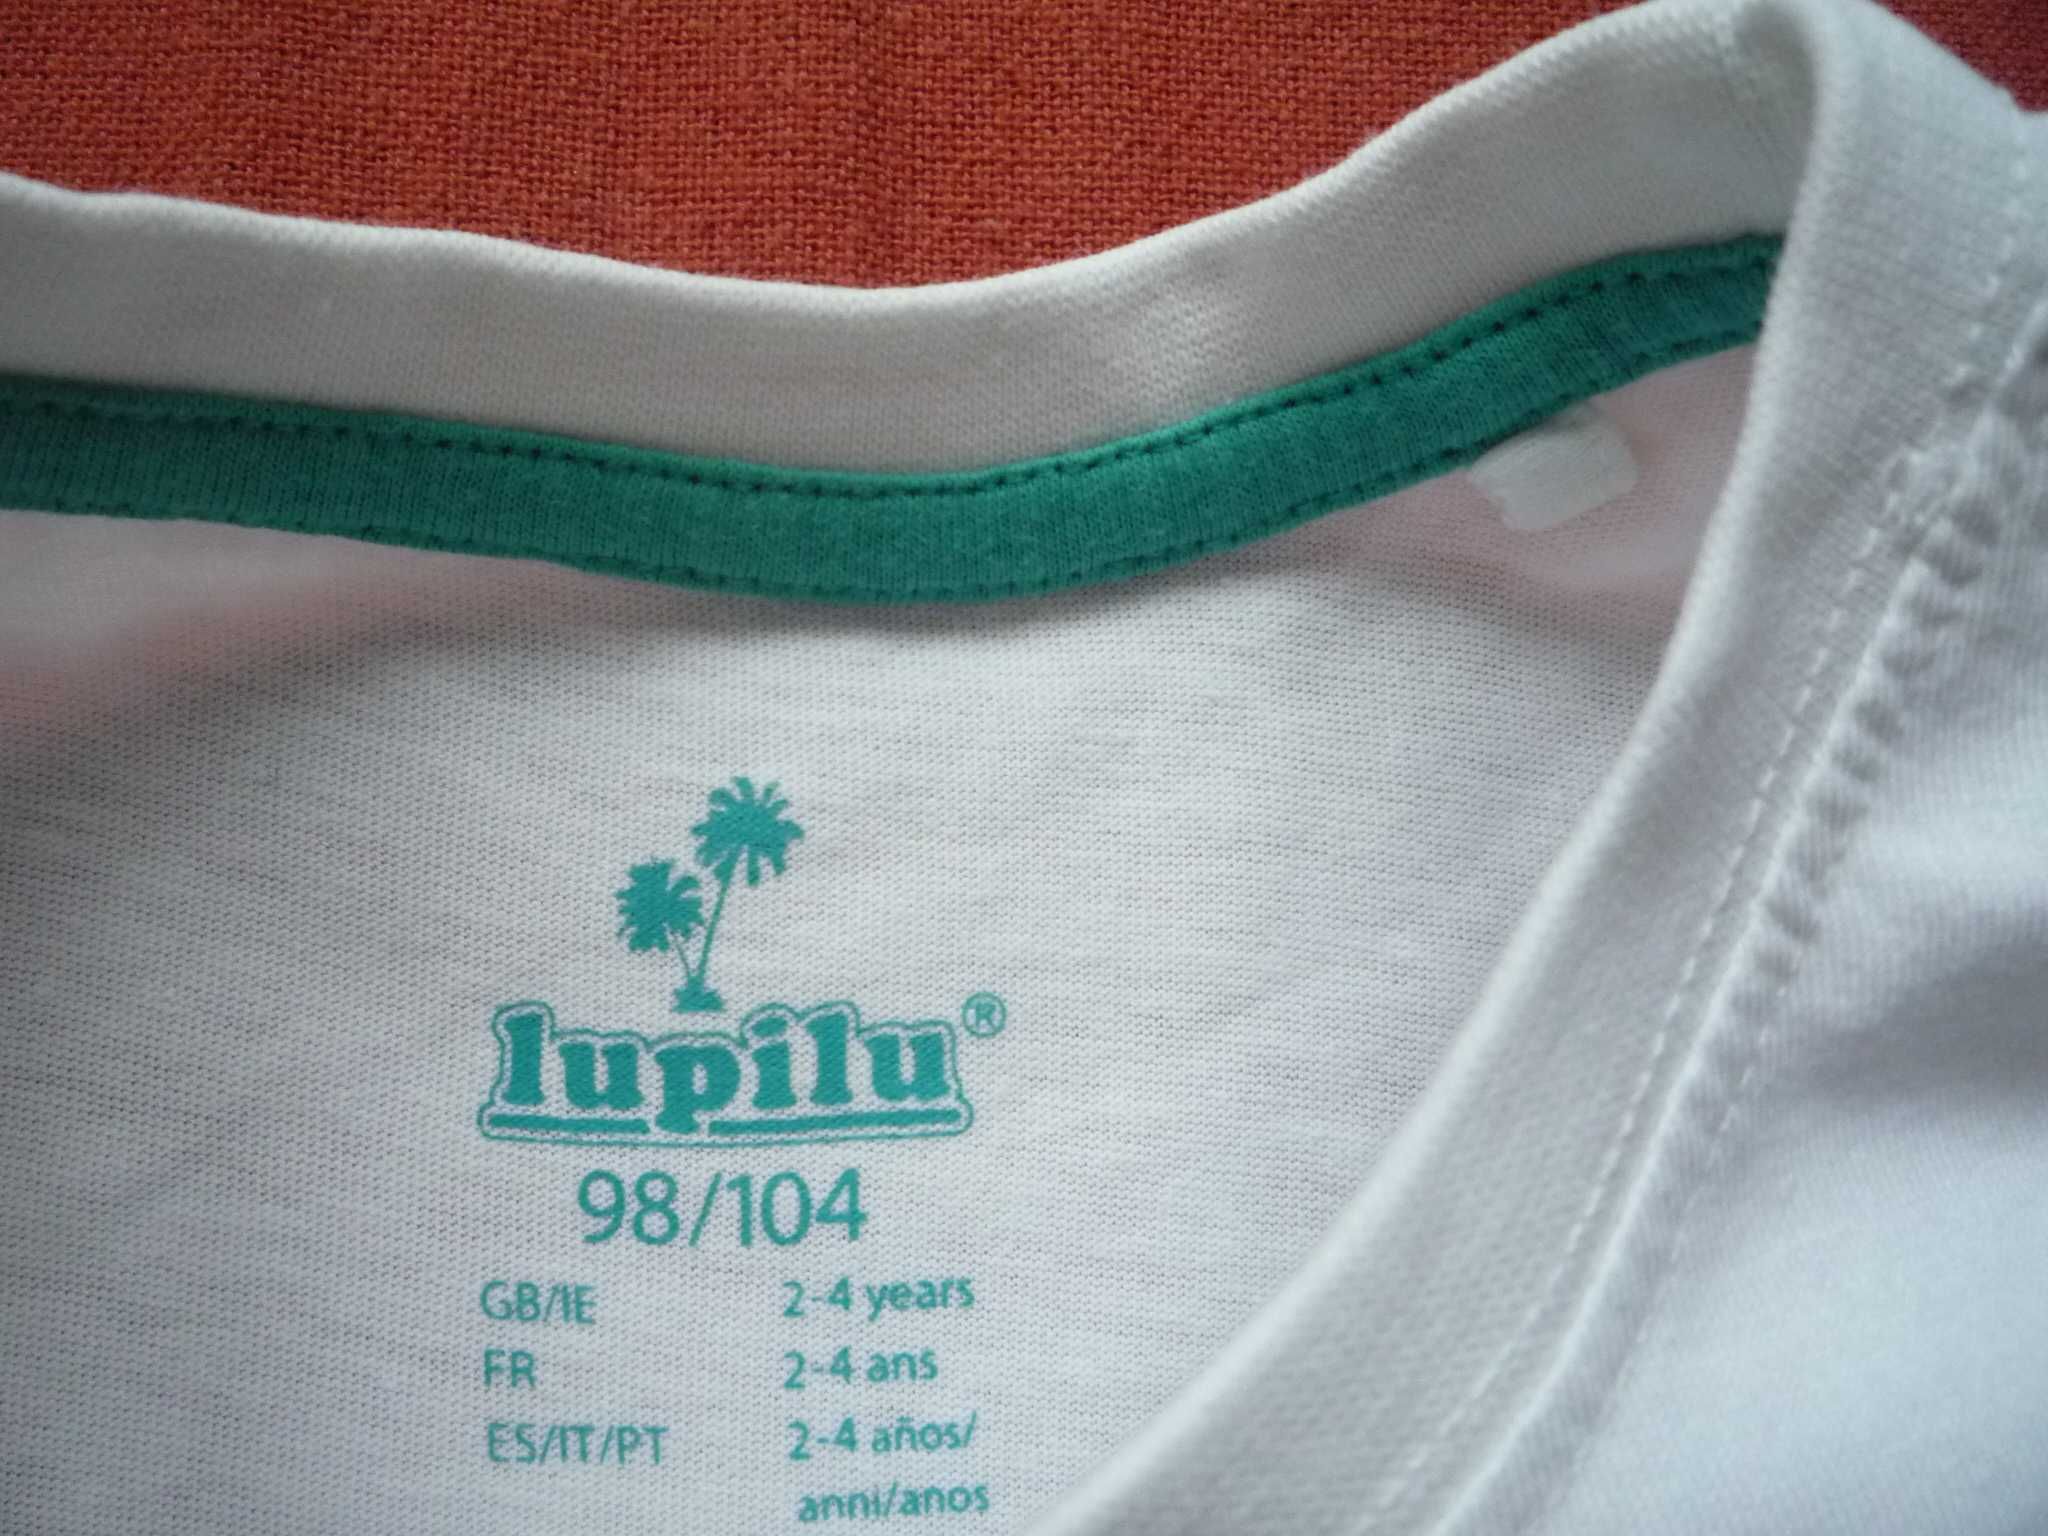 Lupilu 98/104 Biała koszulka Kolorowy nadruk Jak Nowa